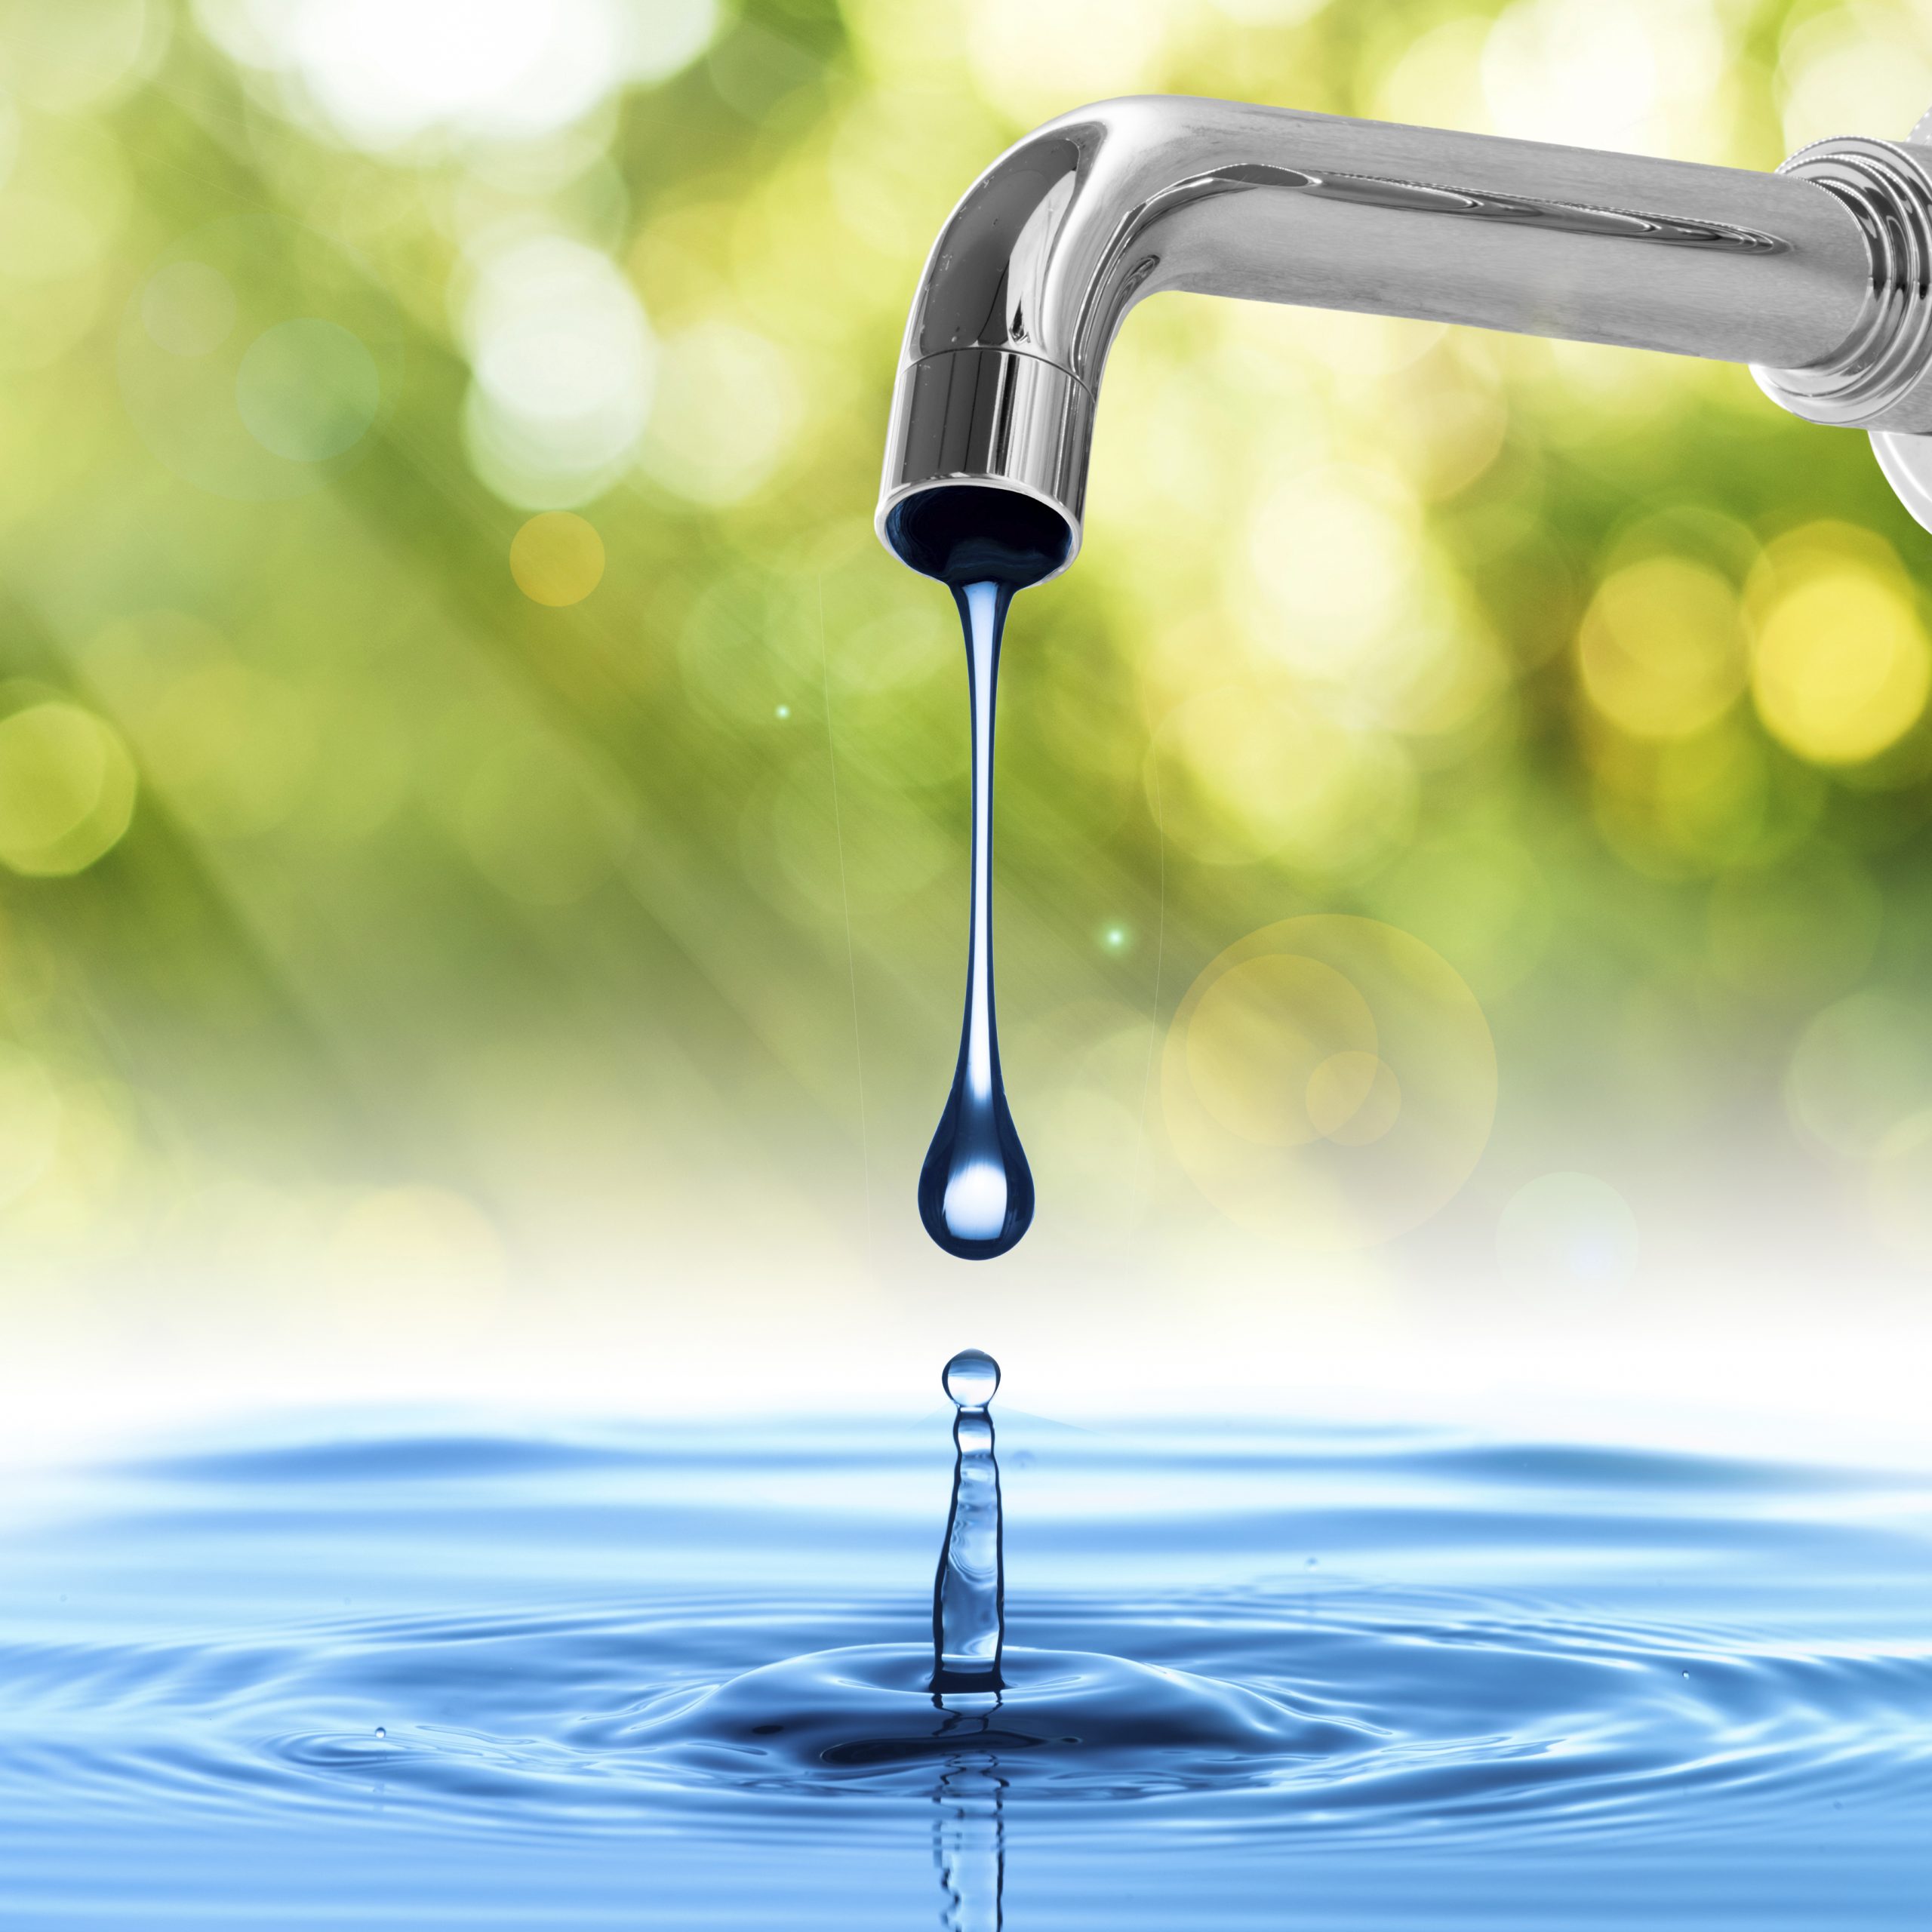 Water efficiency measures for rented properties